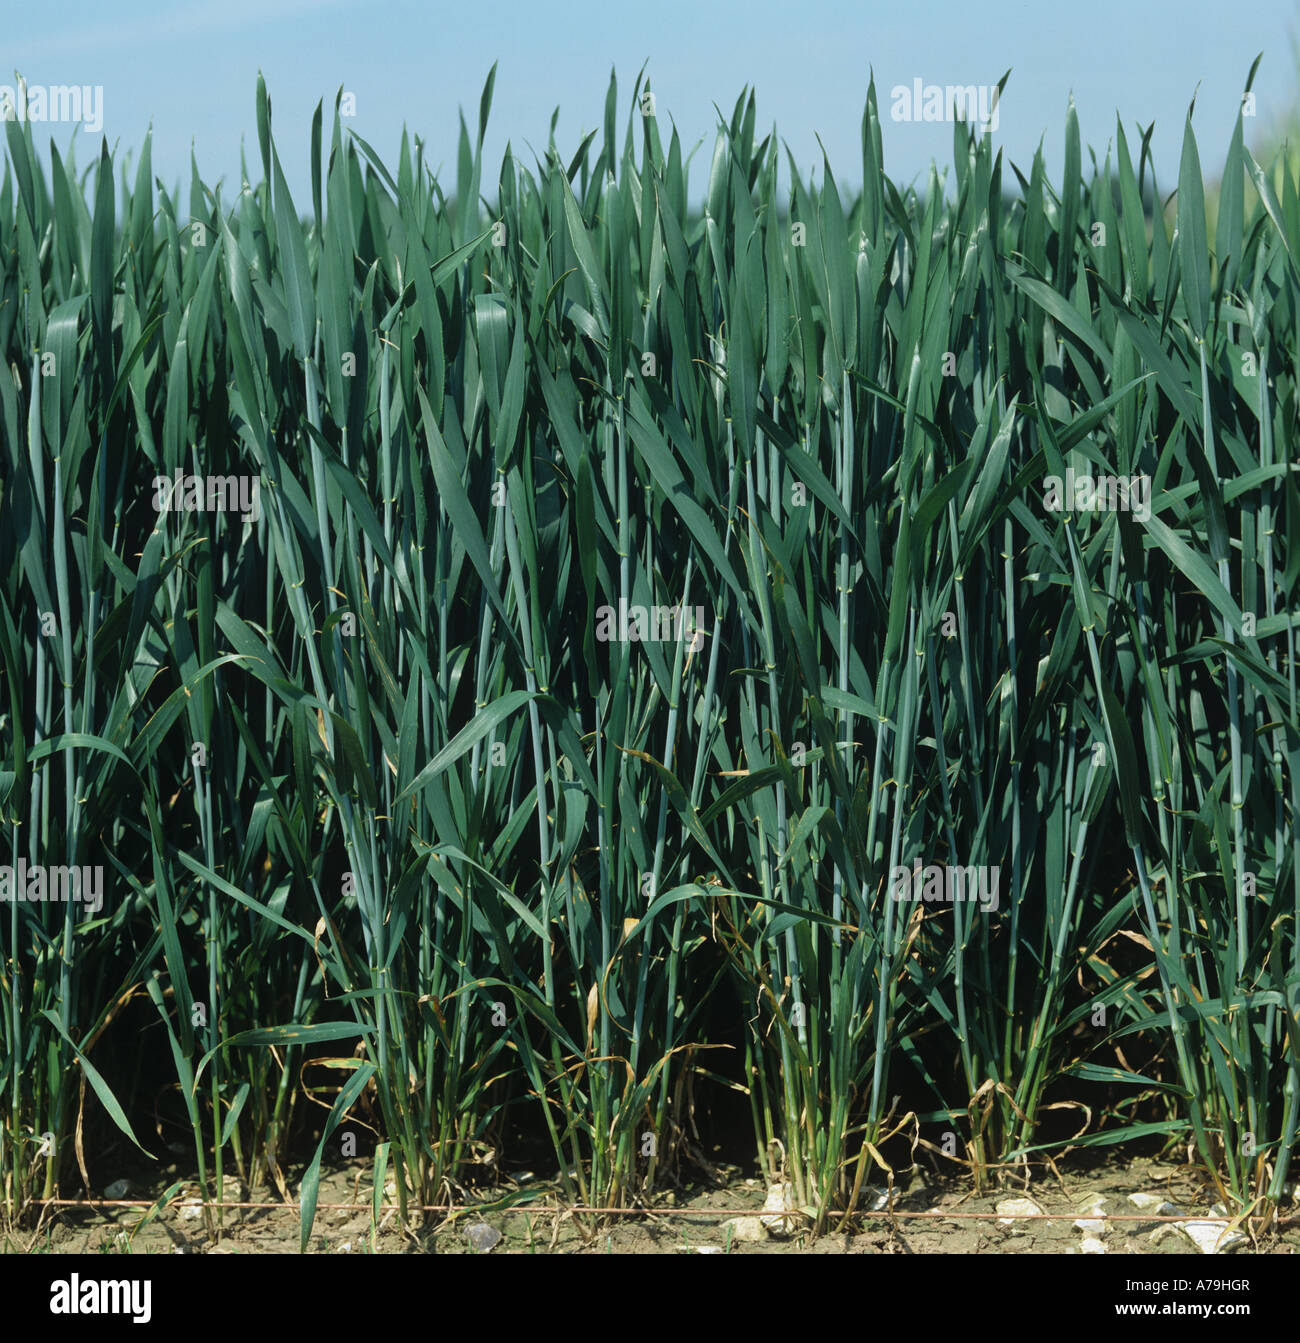 Visage d'une bonne récolte de blé dans la feuille étendard Hampshire Banque D'Images